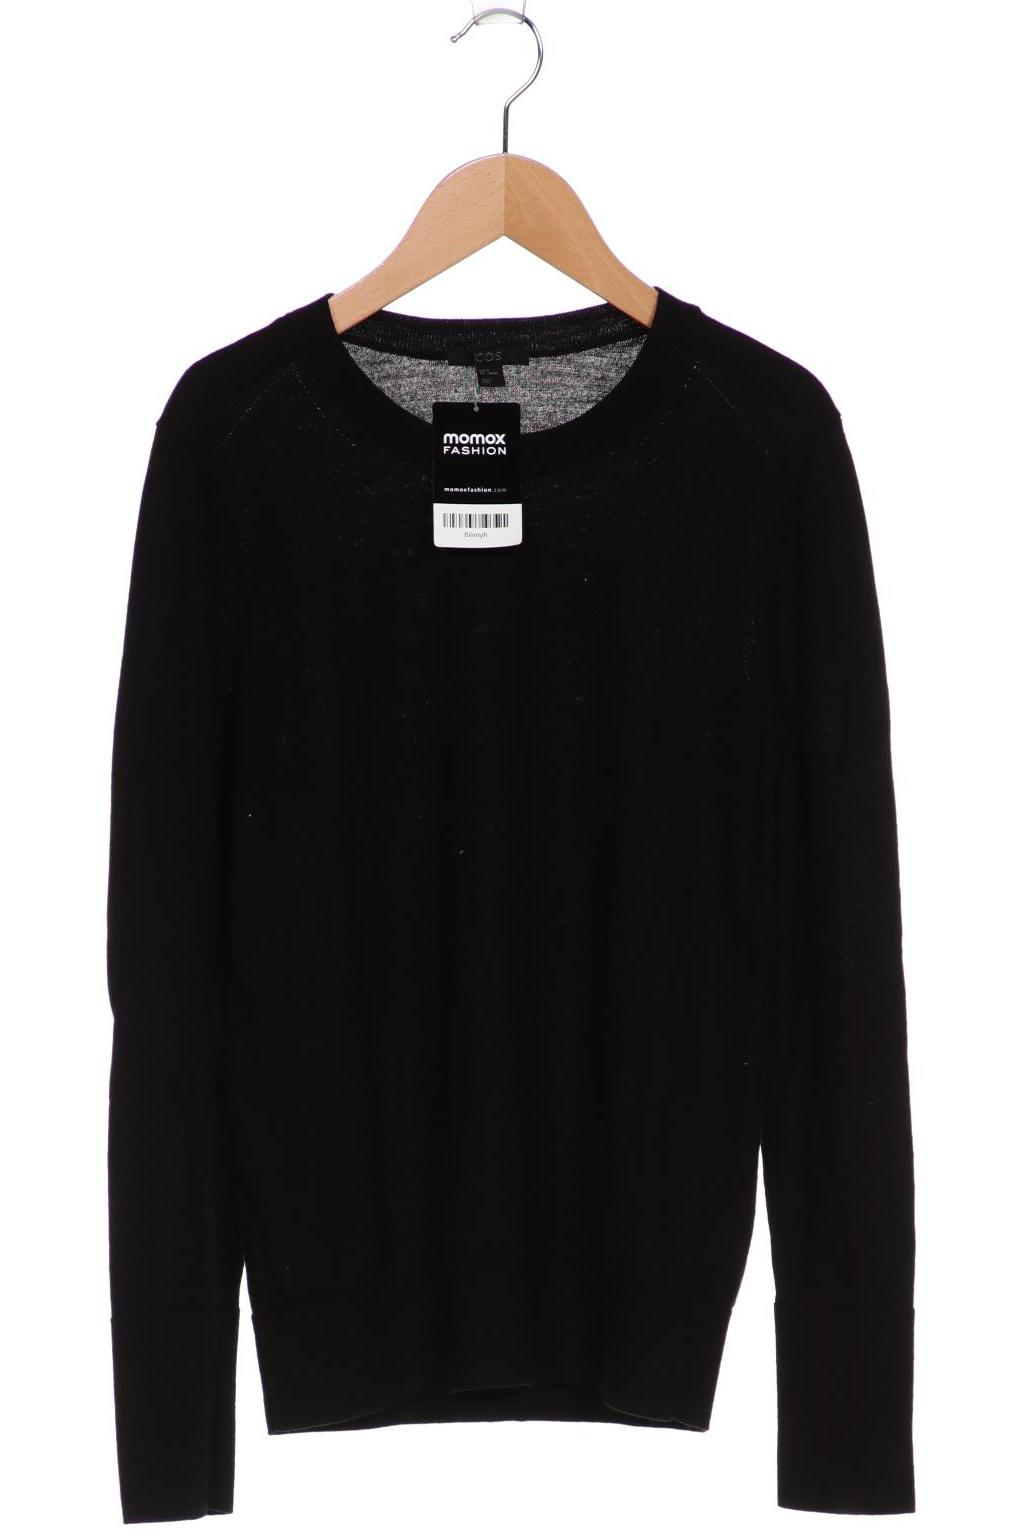 COS Damen Pullover, schwarz, Gr. 38 von COS